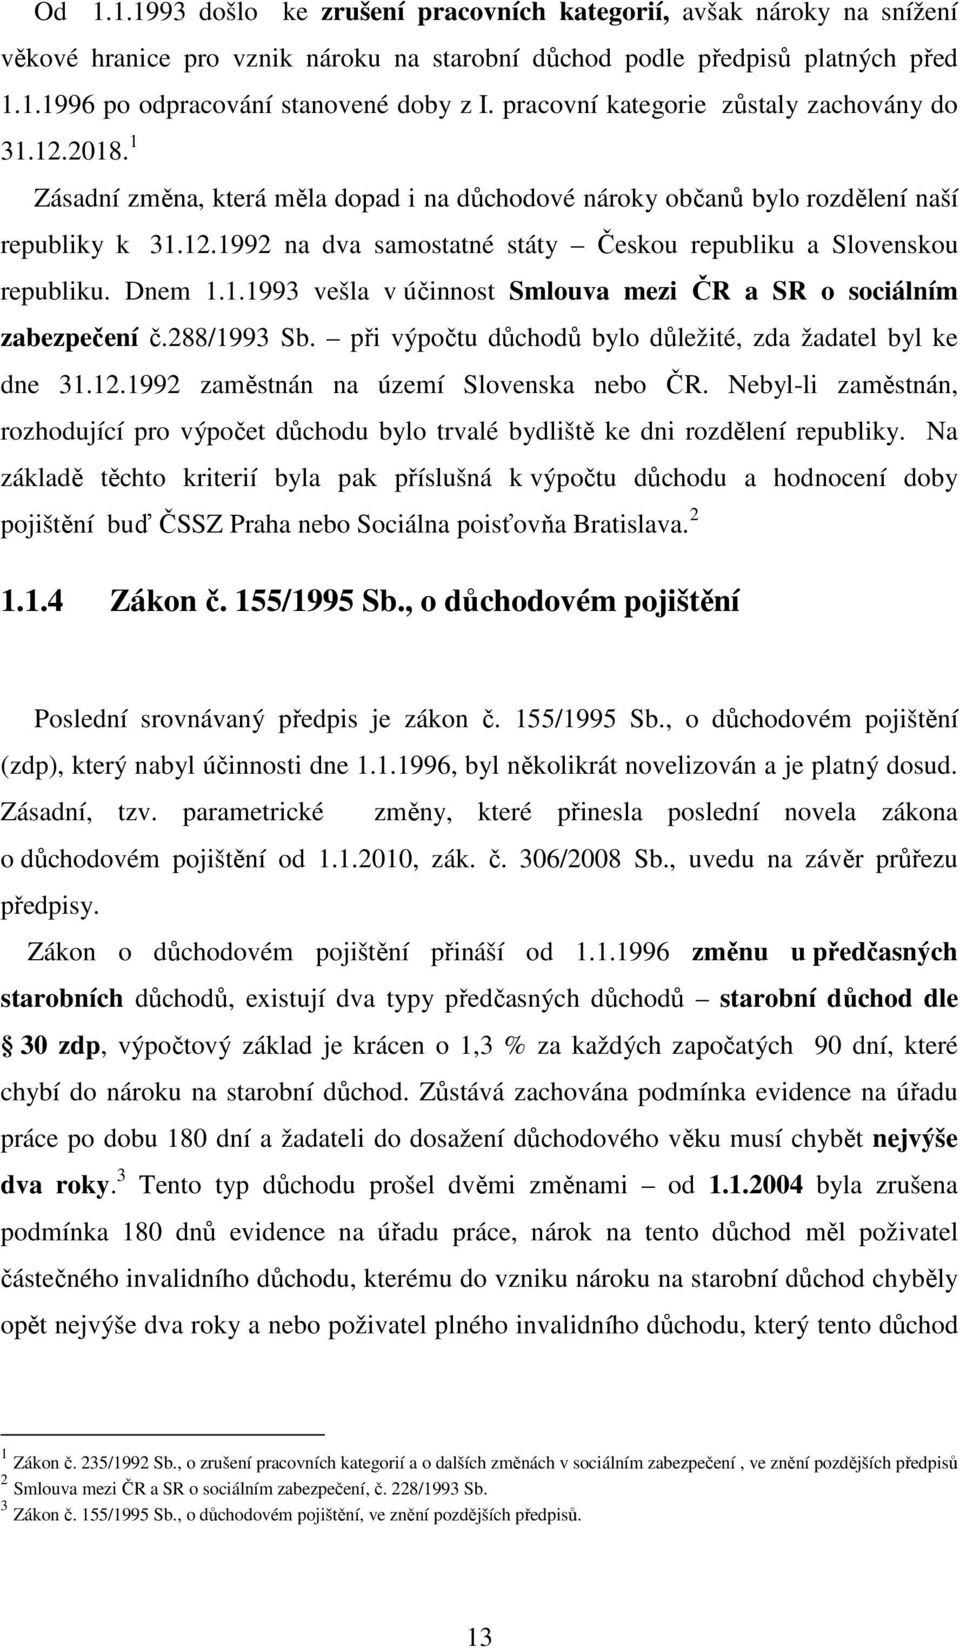 Dnem 1.1.1993 vešla v účinnost Smlouva mezi ČR a SR o sociálním zabezpečení č.288/1993 Sb. při výpočtu důchodů bylo důležité, zda žadatel byl ke dne 31.12.1992 zaměstnán na území Slovenska nebo ČR.